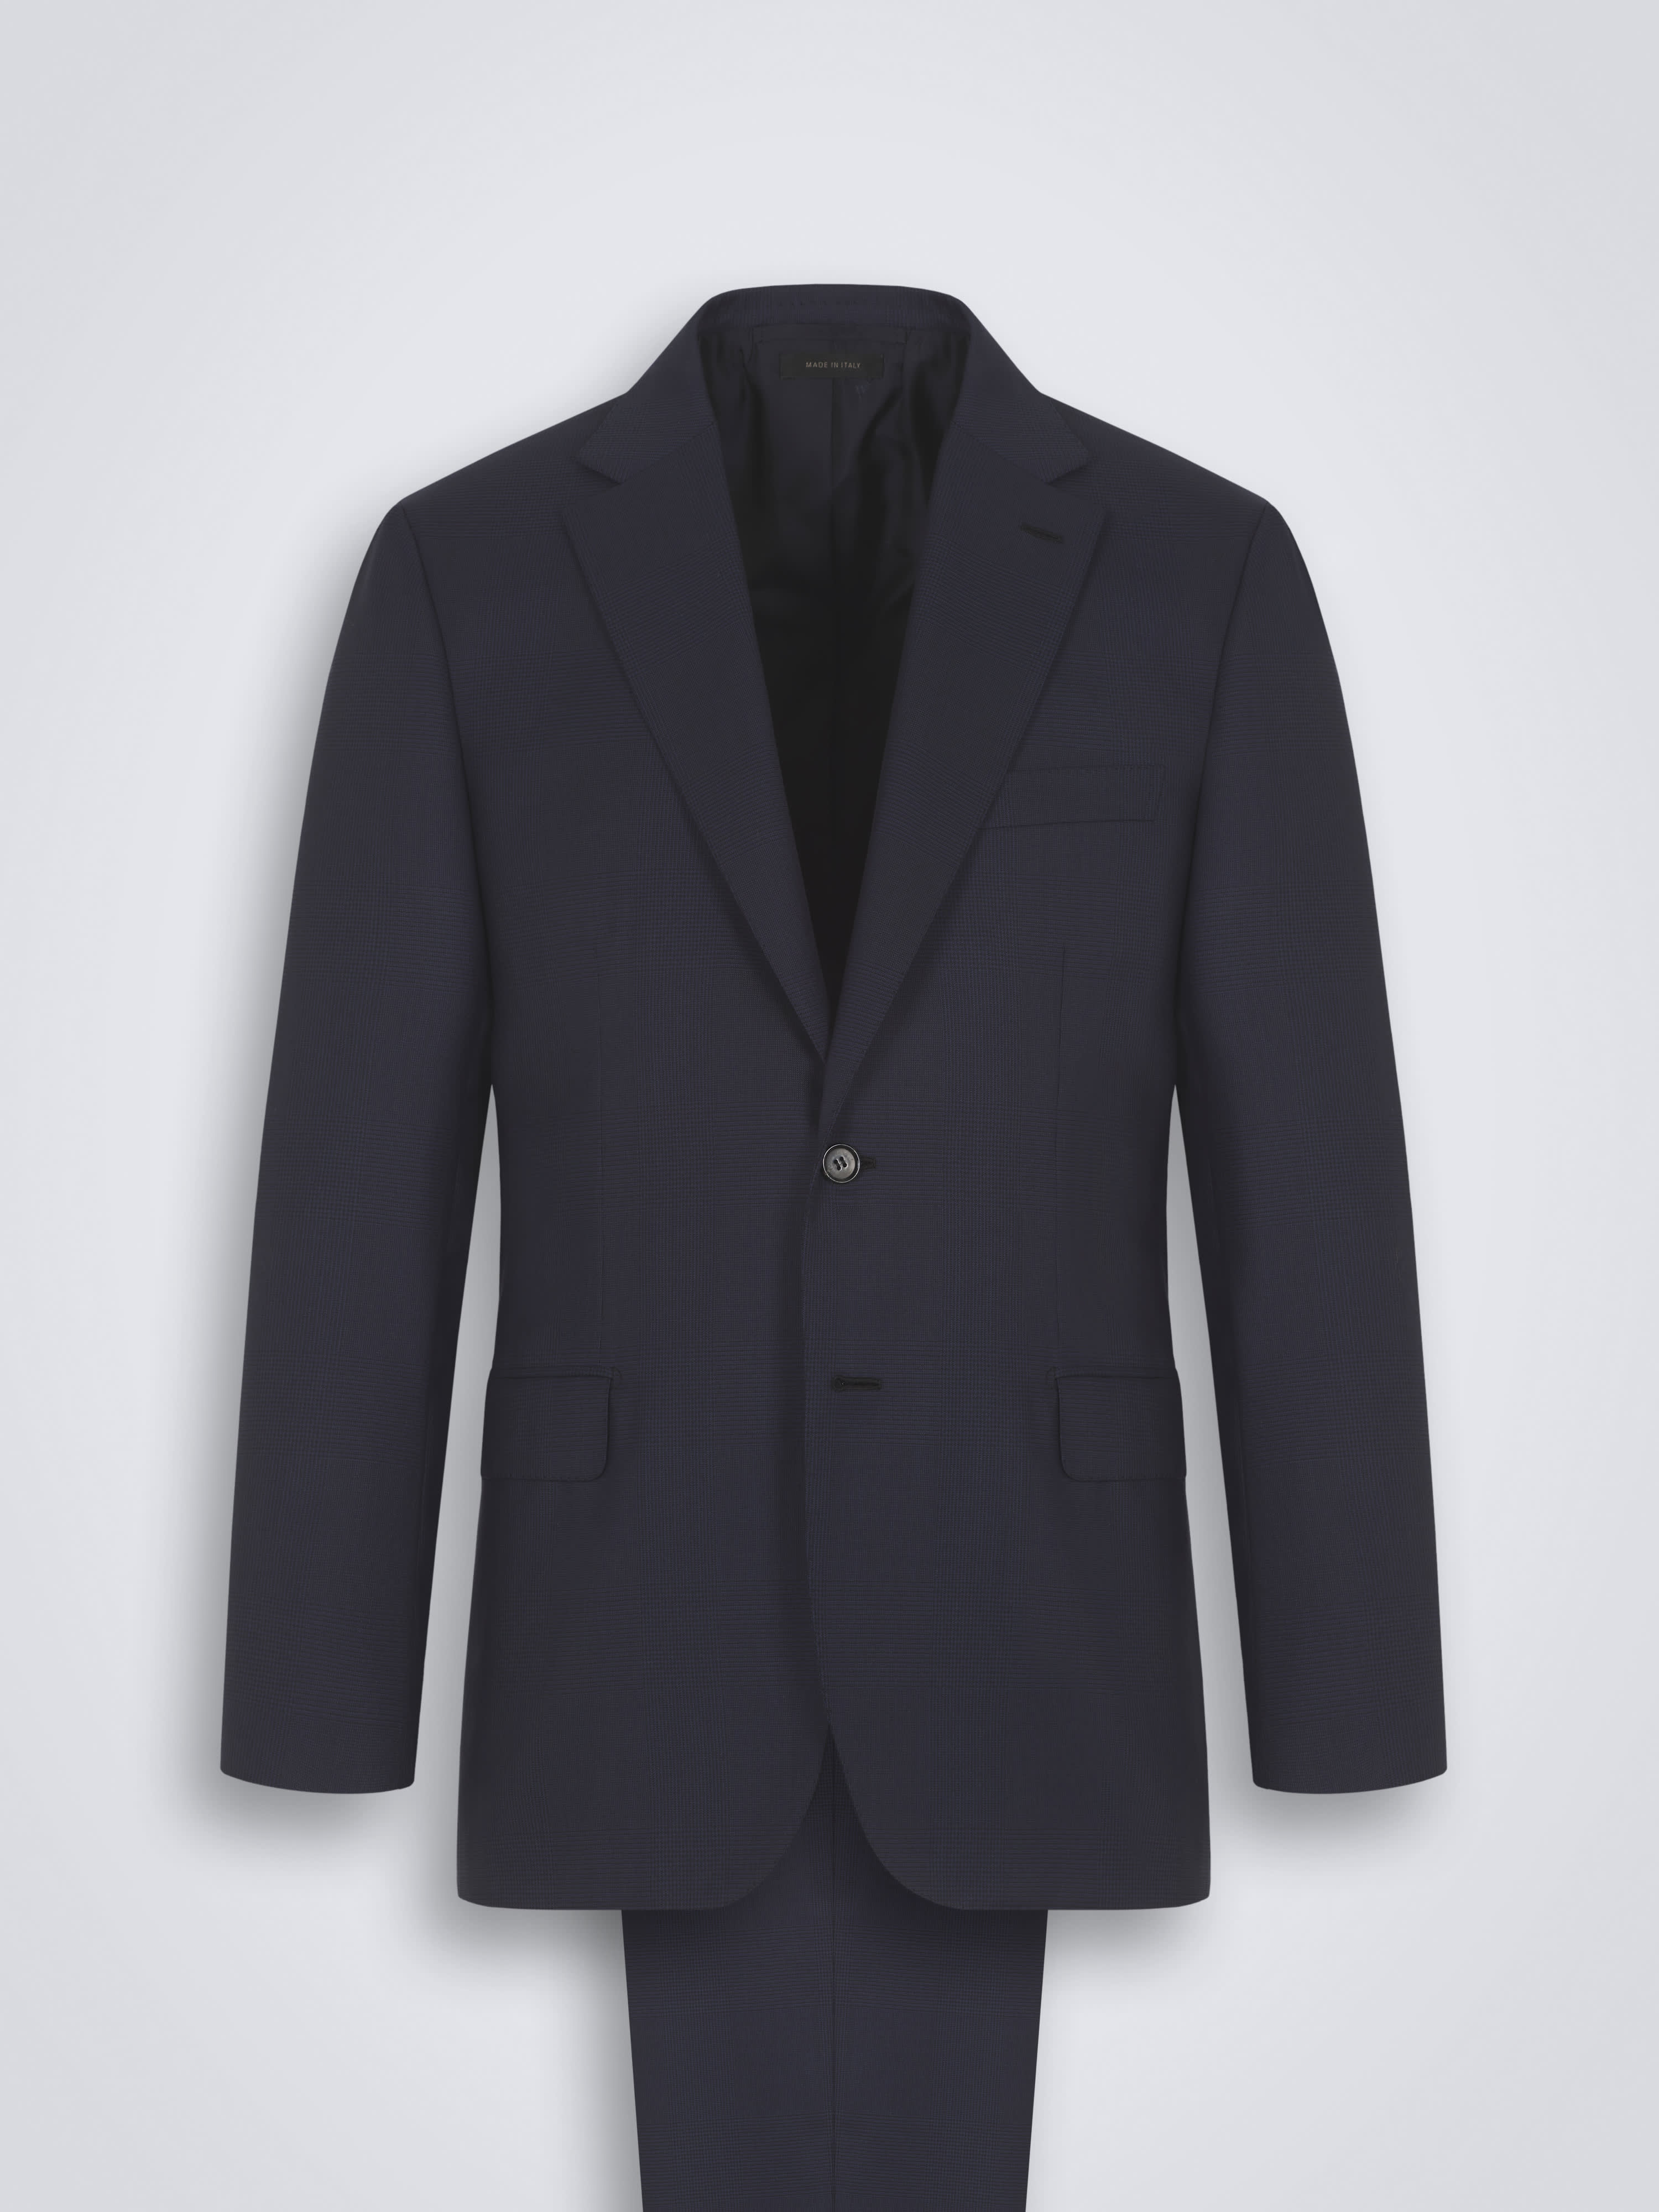 Essential Navy Blue Super 160's Virgin Wool Brunico Suit